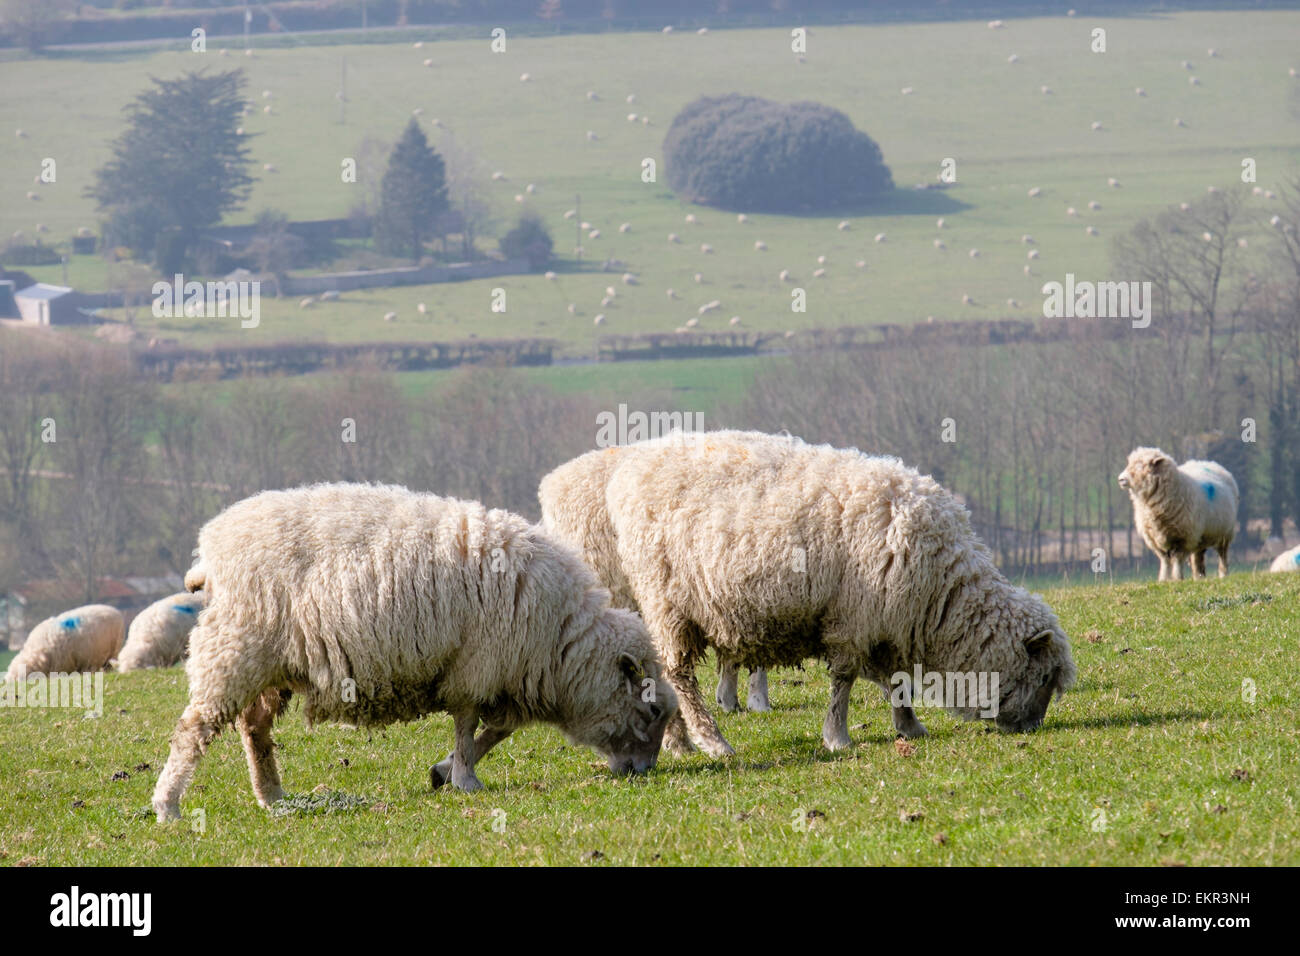 Eine Herde von Poll Dorset Schafe auf Haye ist in South Downs National Park Landschaft. West Dean Chichester West Sussex England Großbritannien Großbritannien Stockfoto